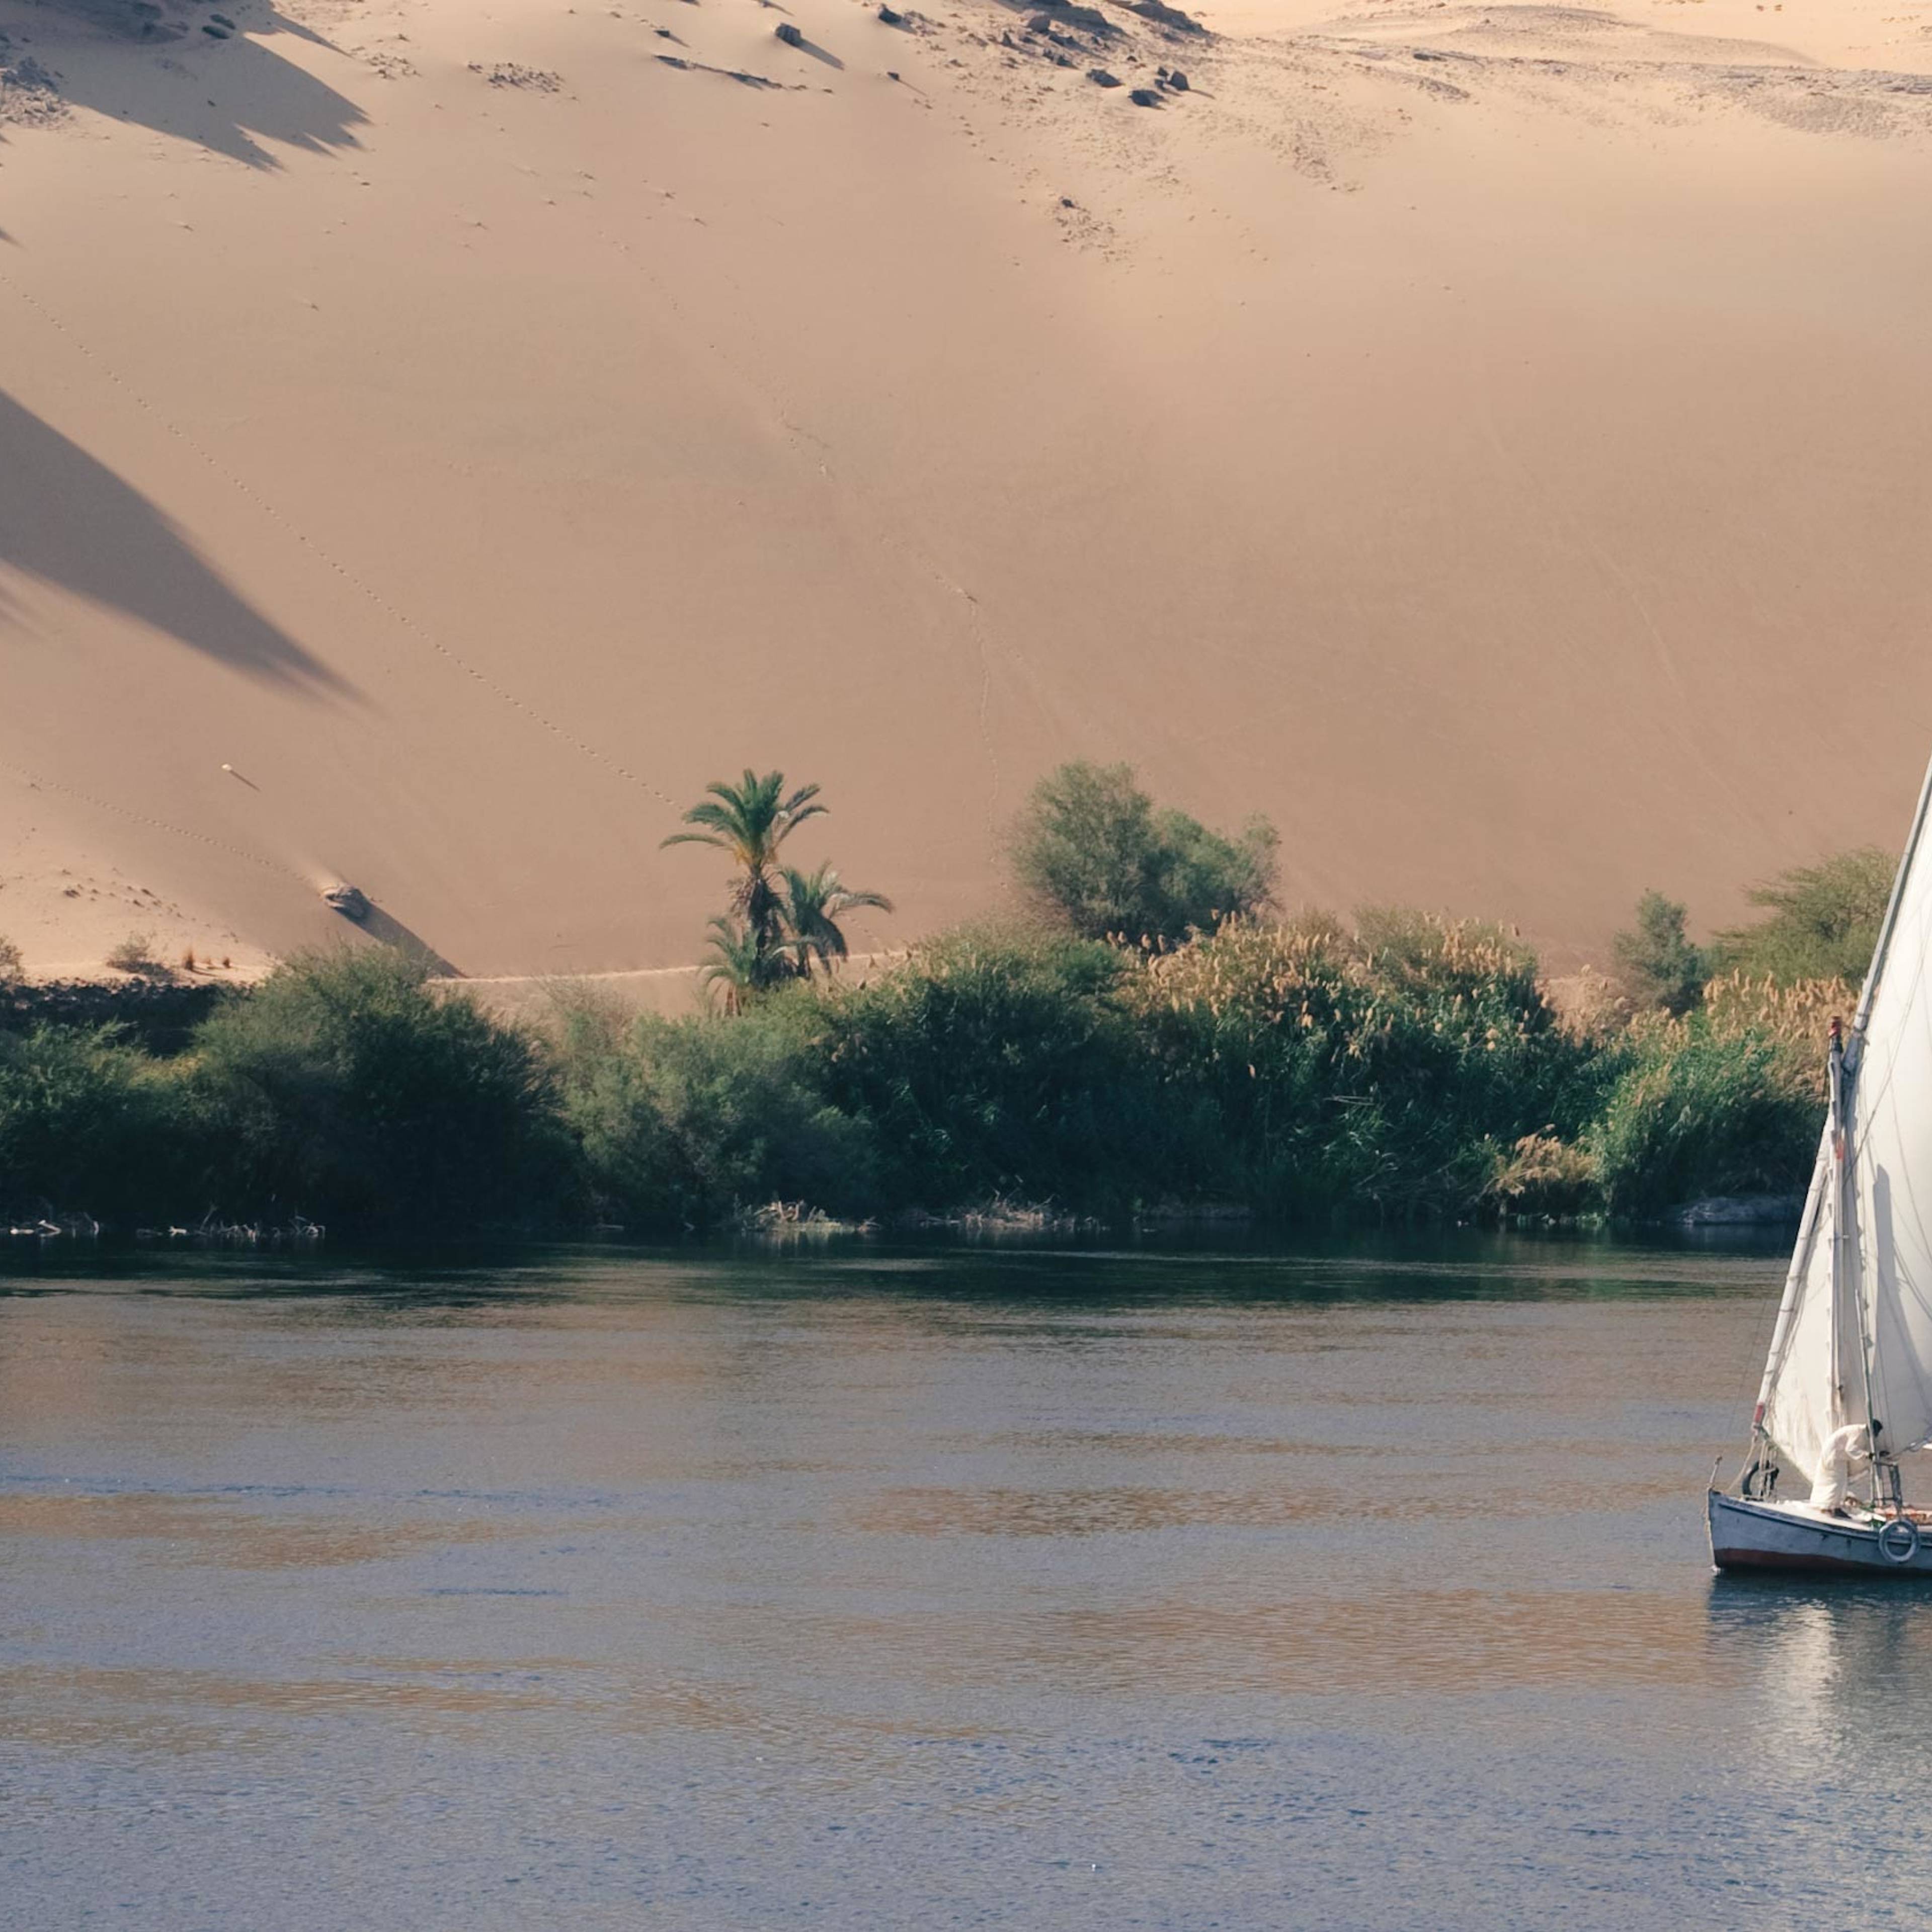 Felucca en el Nilo, Egipto.